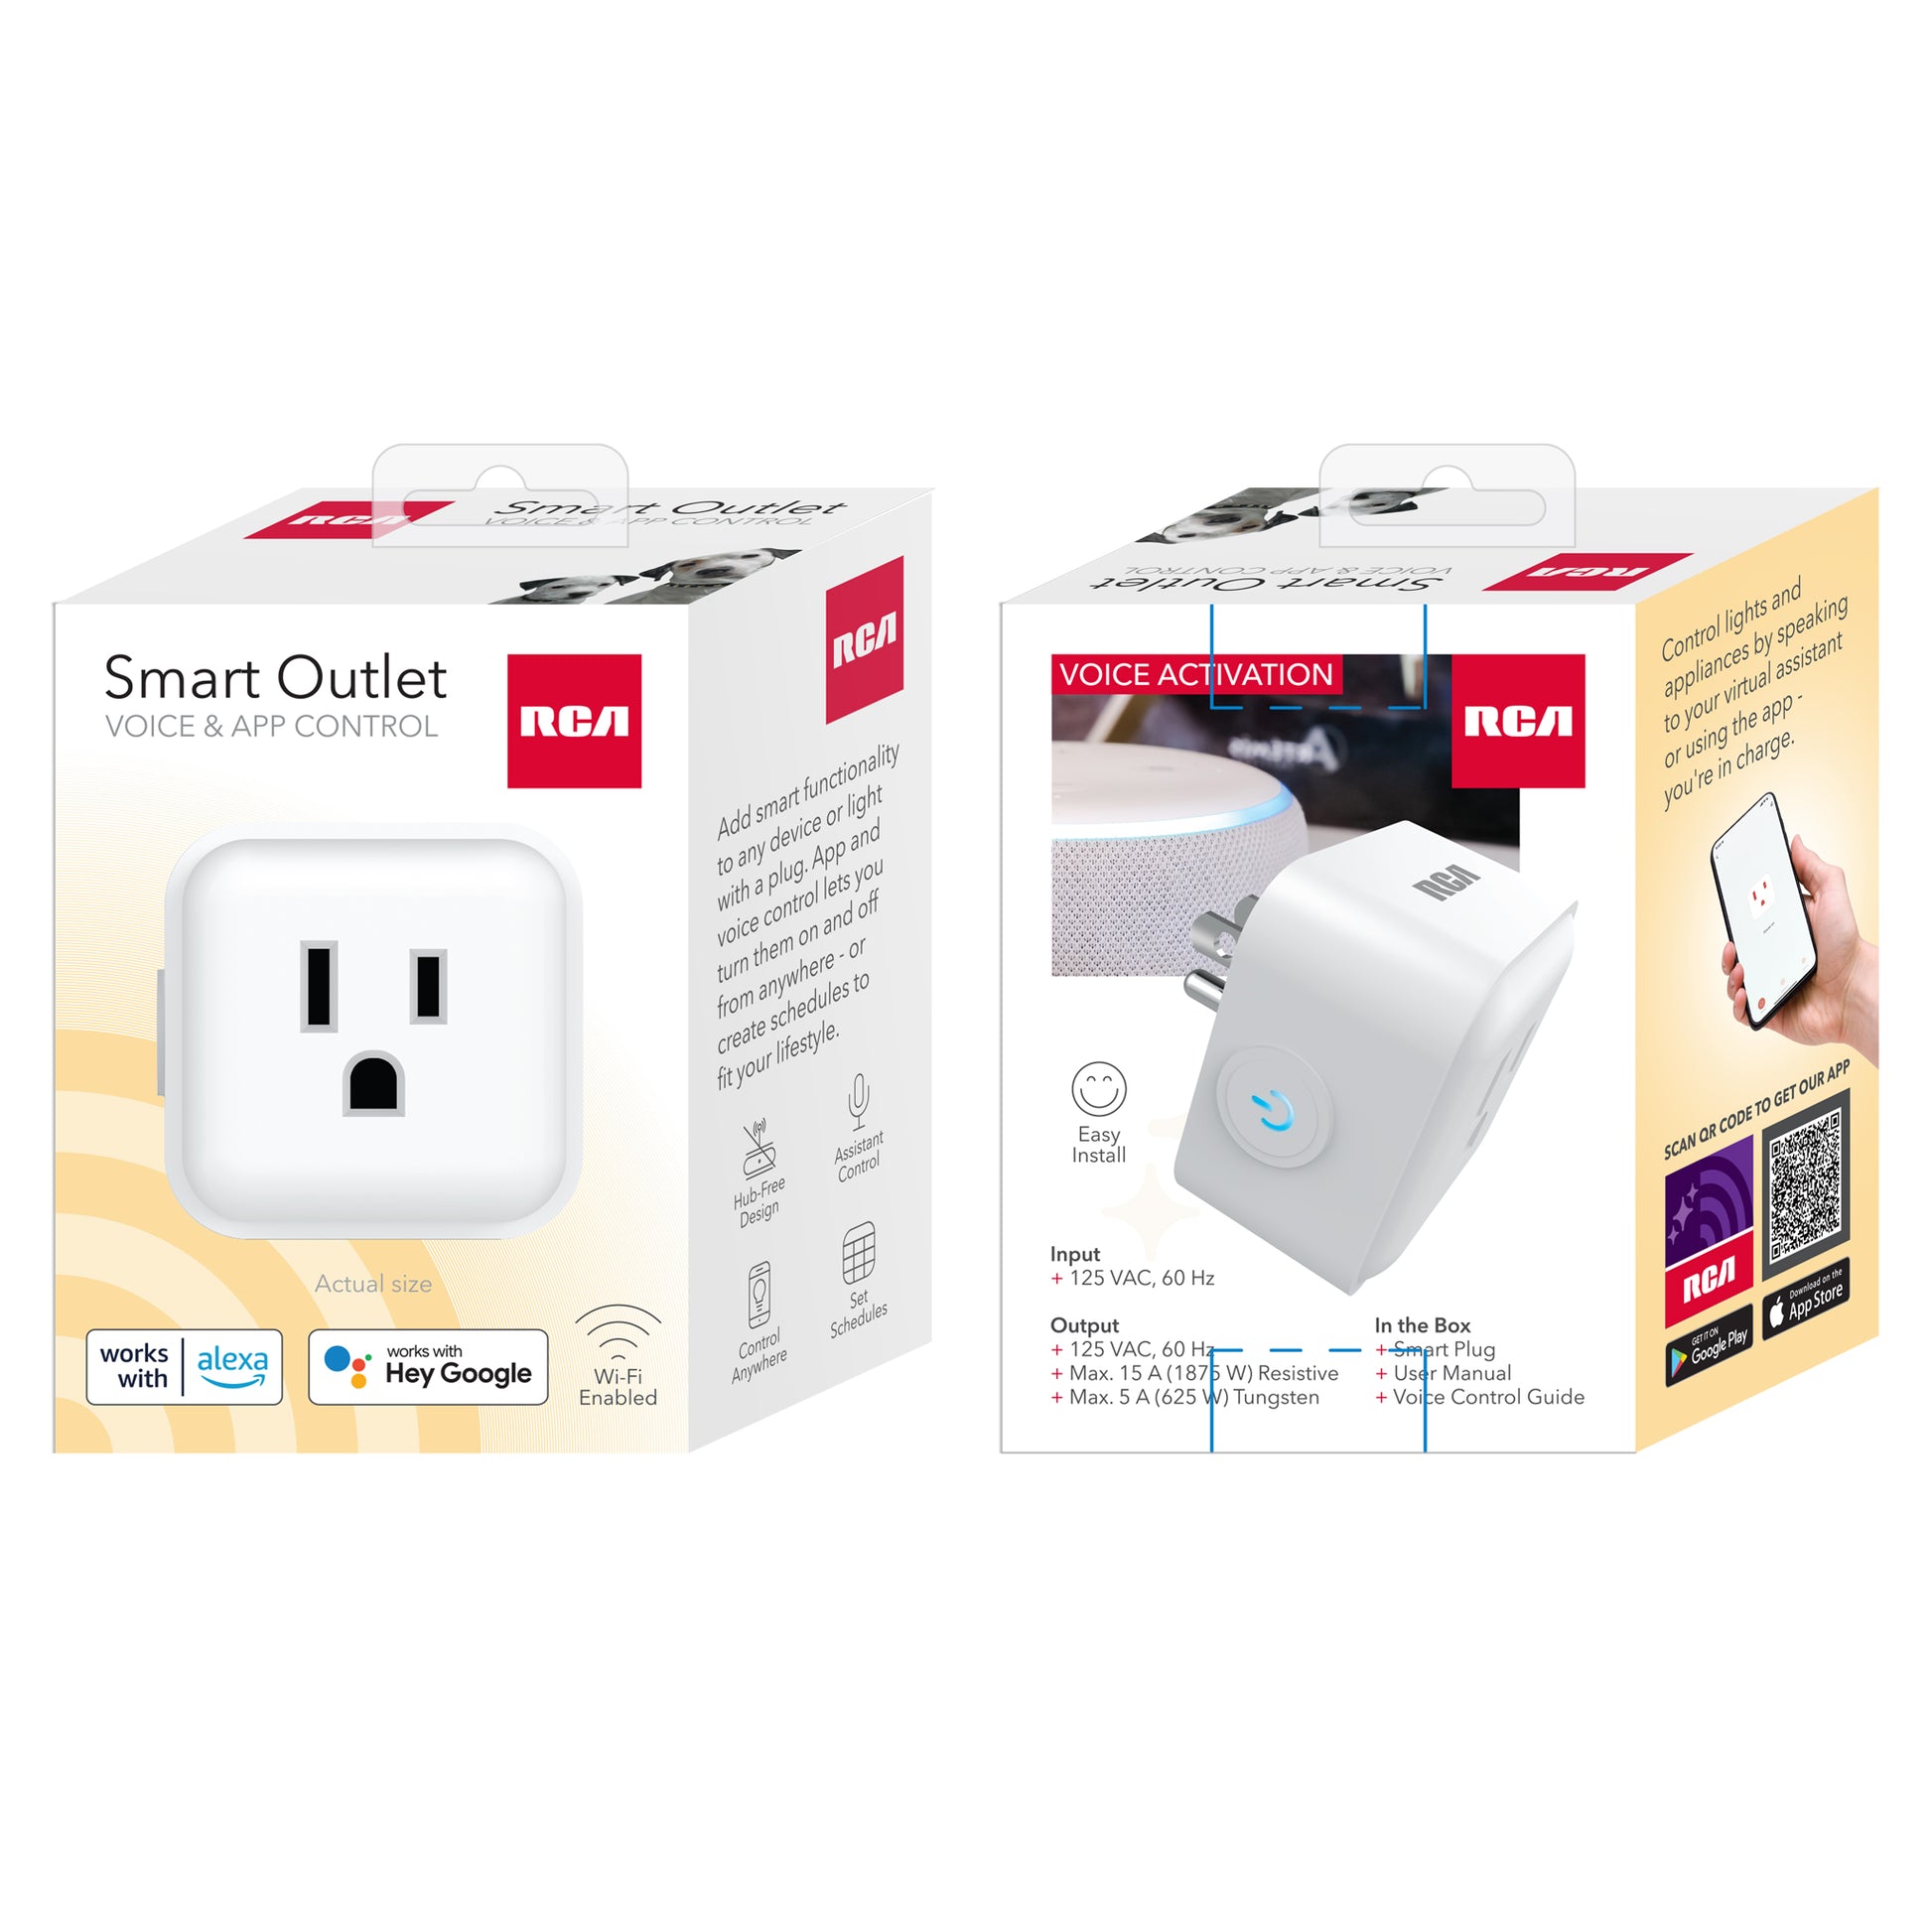 How to add a smart plug?